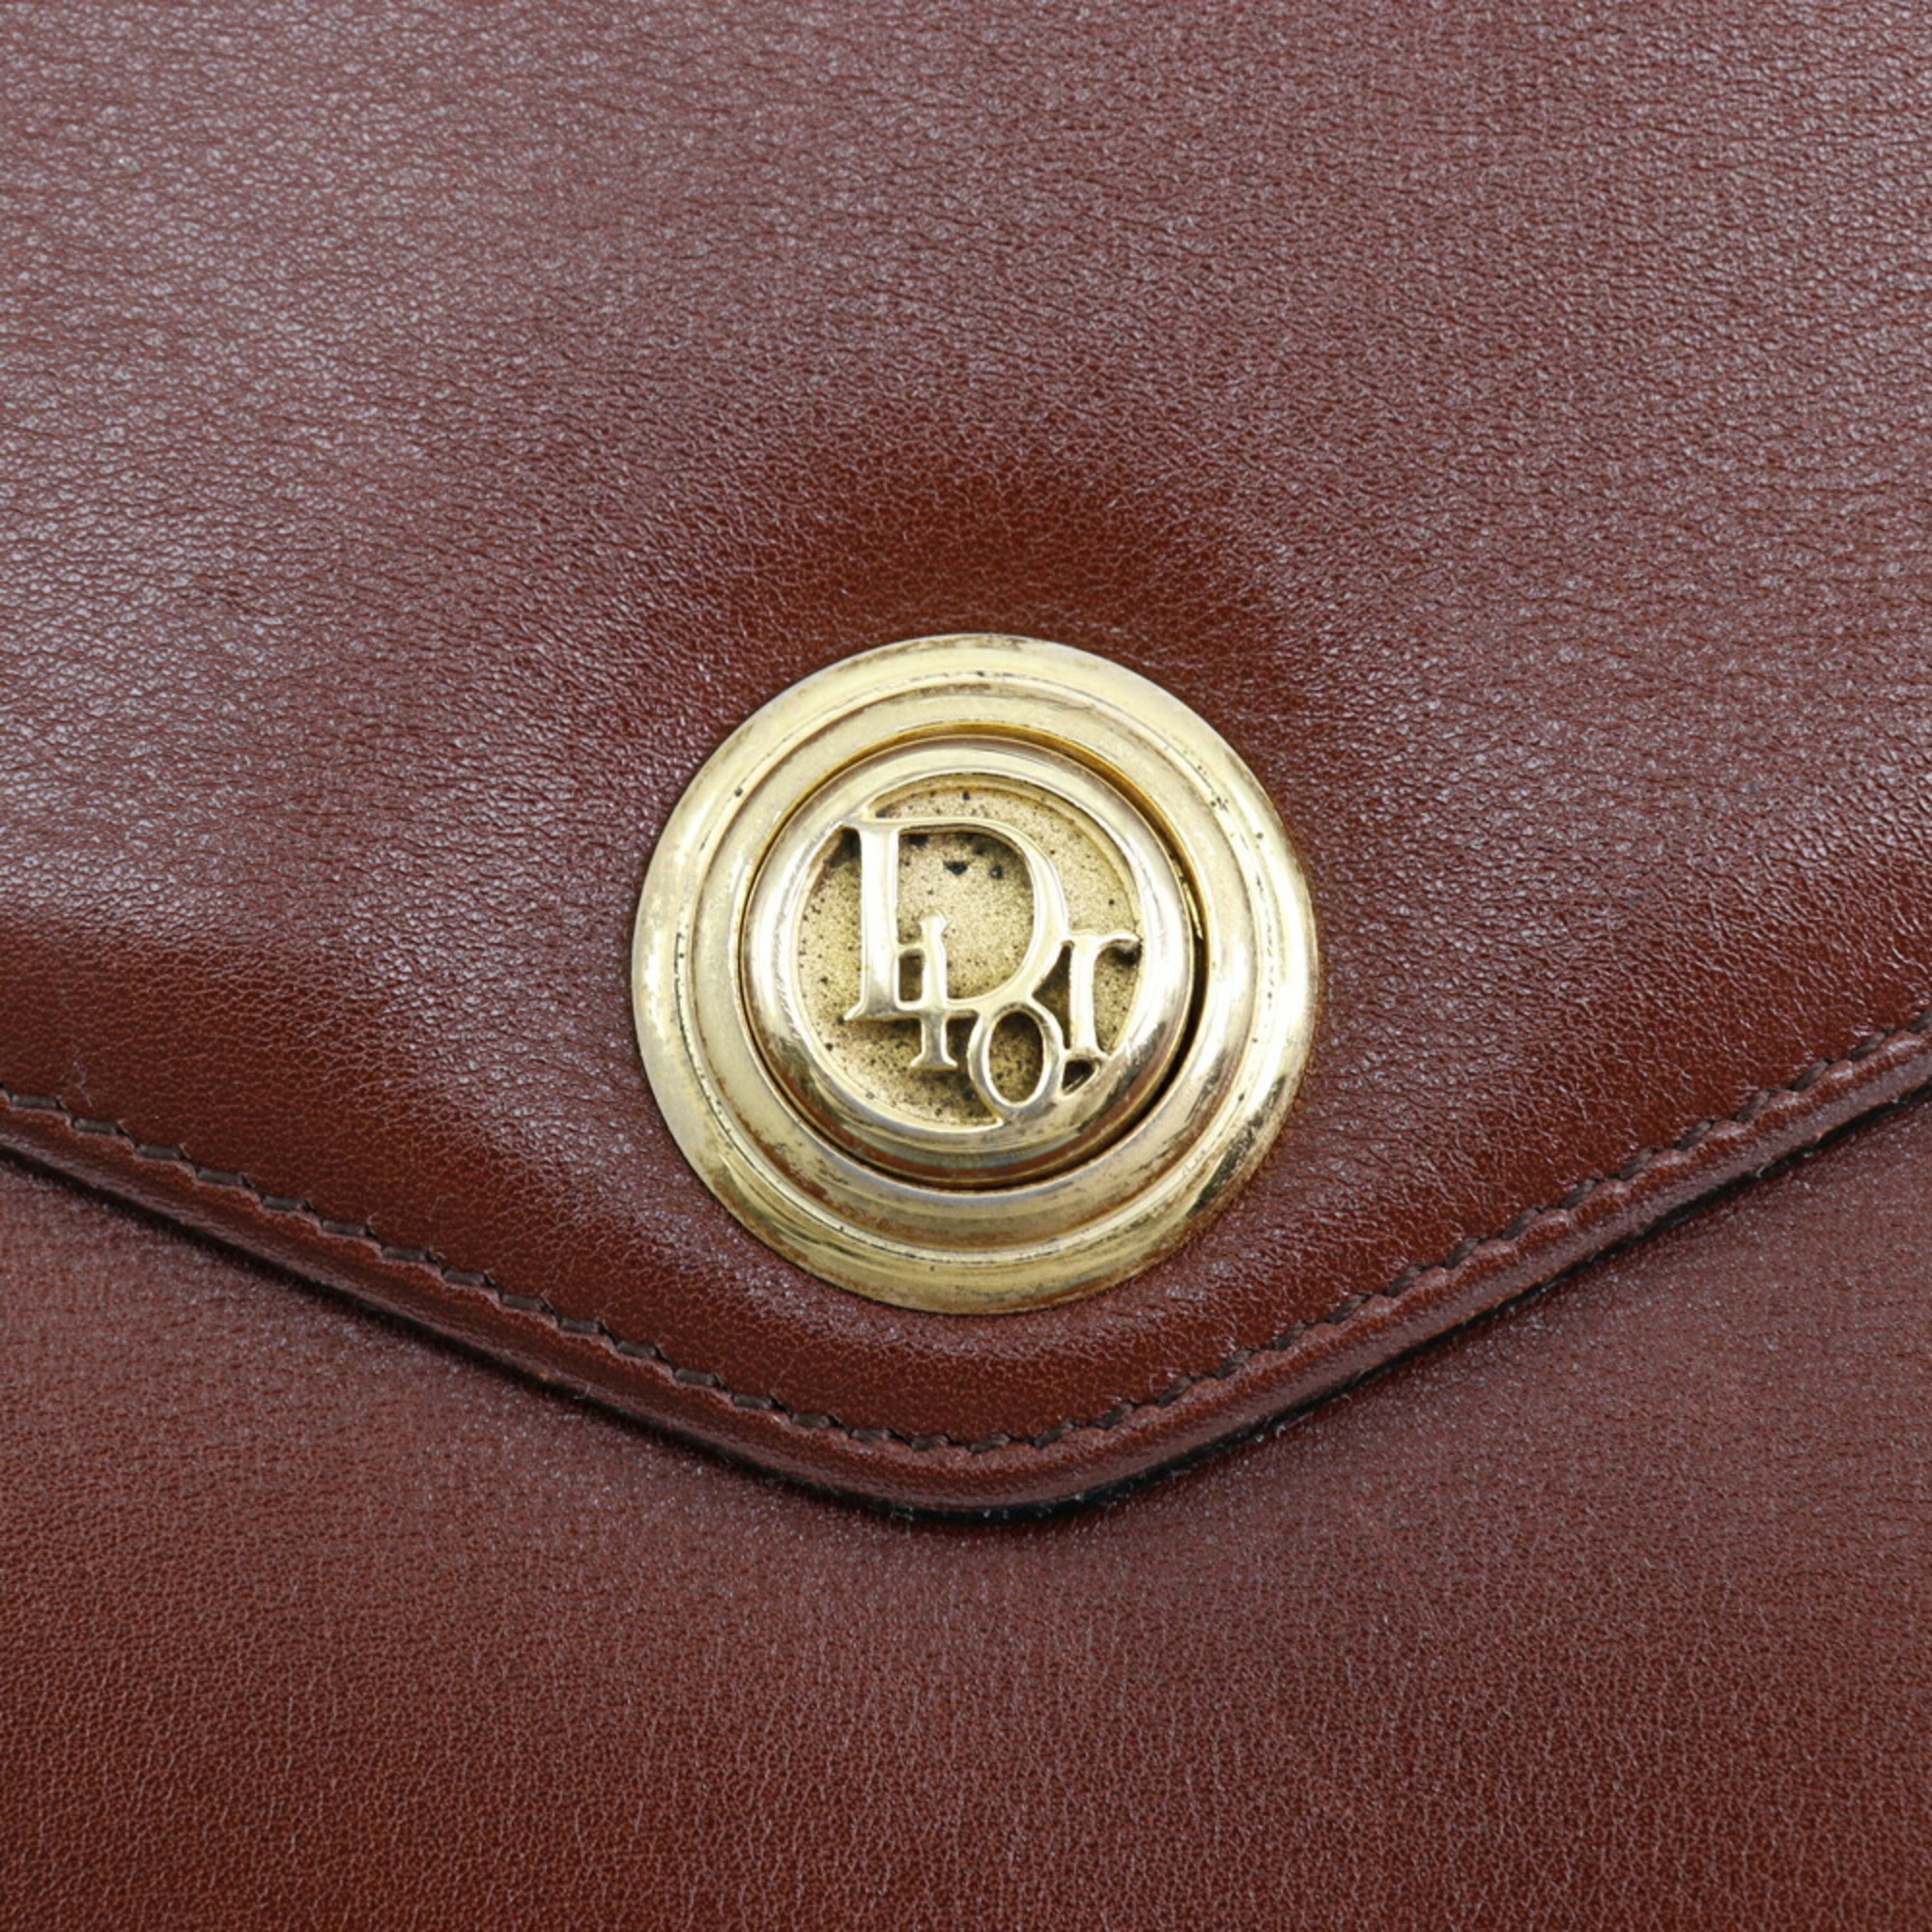 Christian Dior Shoulder Bag Leather A5 Flap Women's I120824010